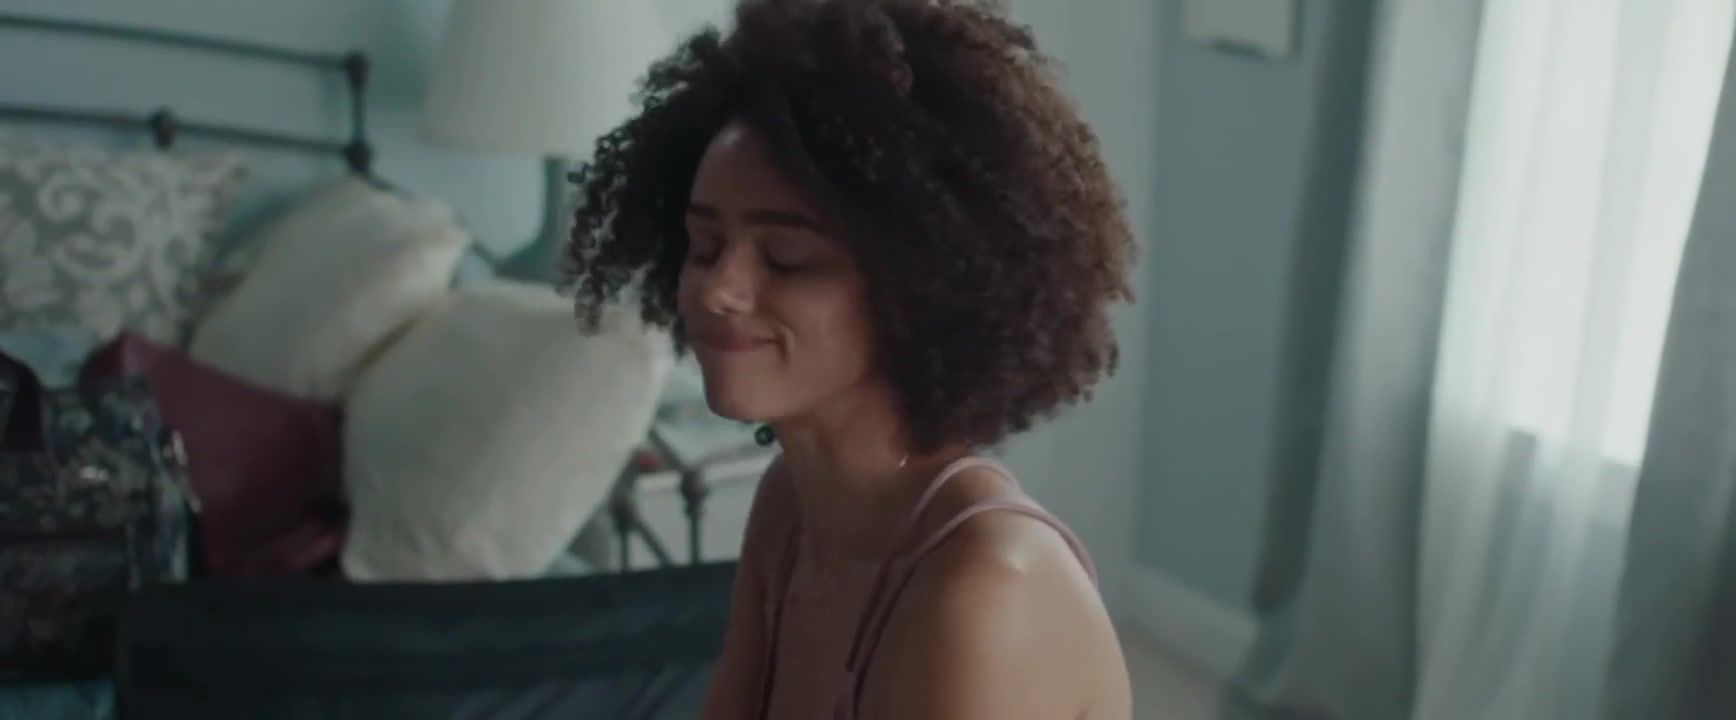 Carro Black Nathalie Emmanuel joins white co-star Britt Lower nude in Holly Slept Over (2020) ILikeTubes